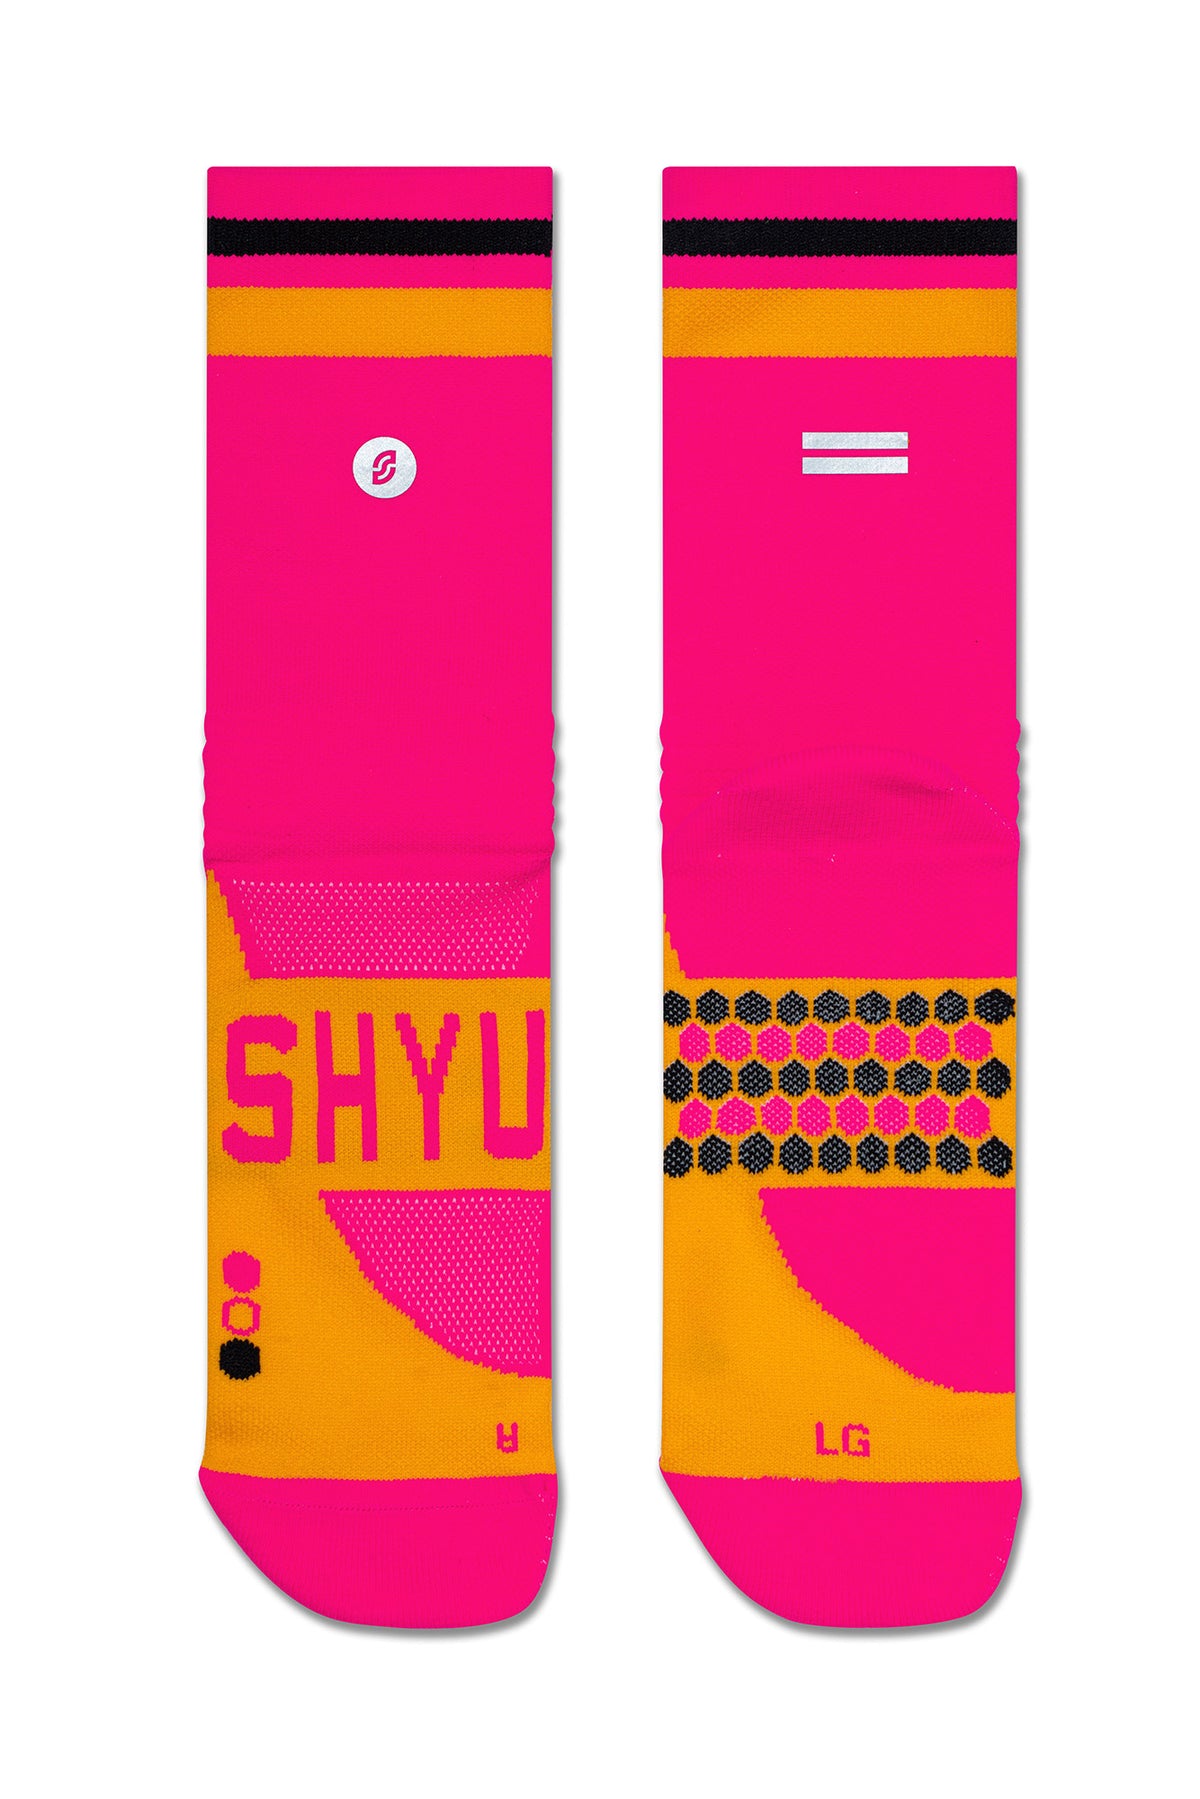 SHYU racing socks - pink | orange | black